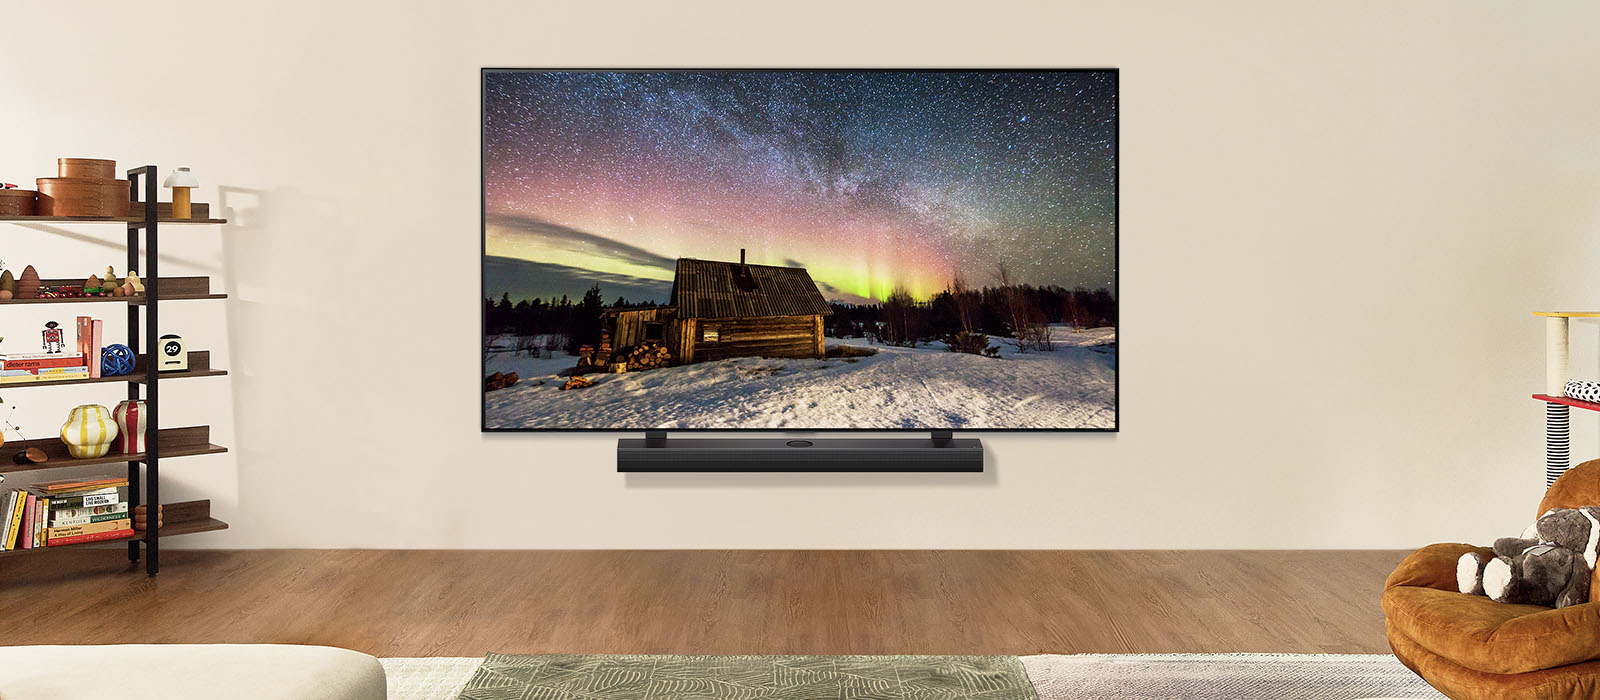 LG OTV a LG Soundbar v moderním obývacím prostoru ve dne. Obraz polární záře se na obrazovce zobrazuje s ideální úrovní jasu.